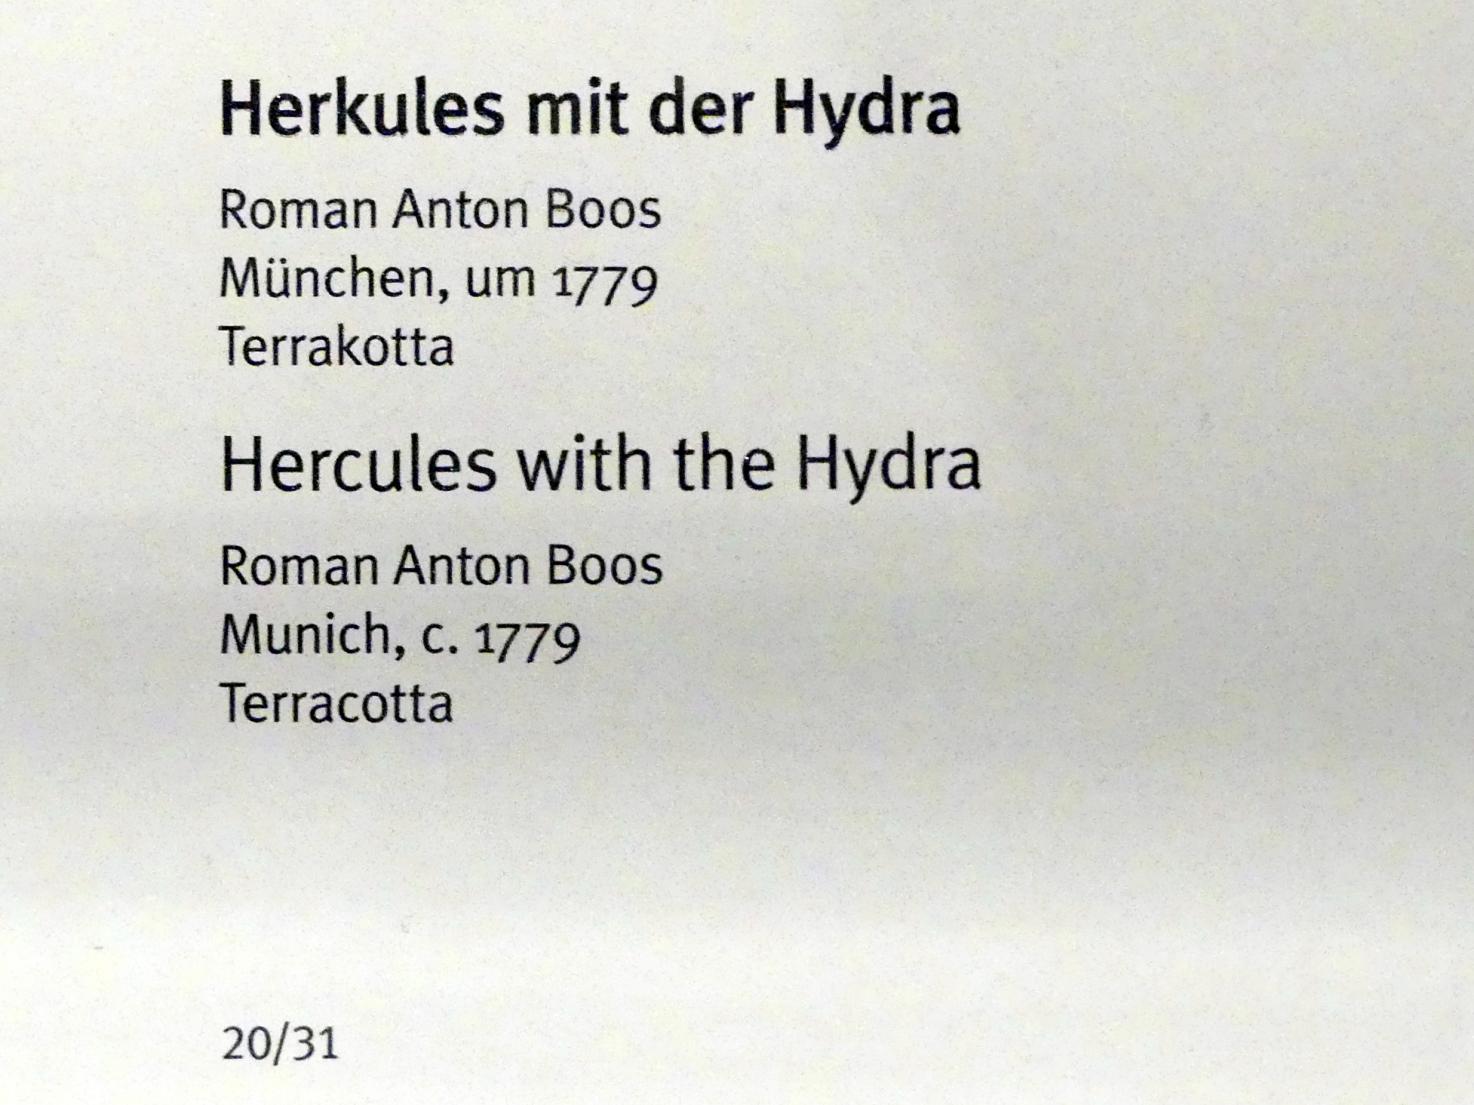 Roman Anton Boos (1767–1790), Herkules mit der Hydra, München, Hofgarten, jetzt München, Bayerisches Nationalmuseum, Saal 43, um 1779, Bild 2/4